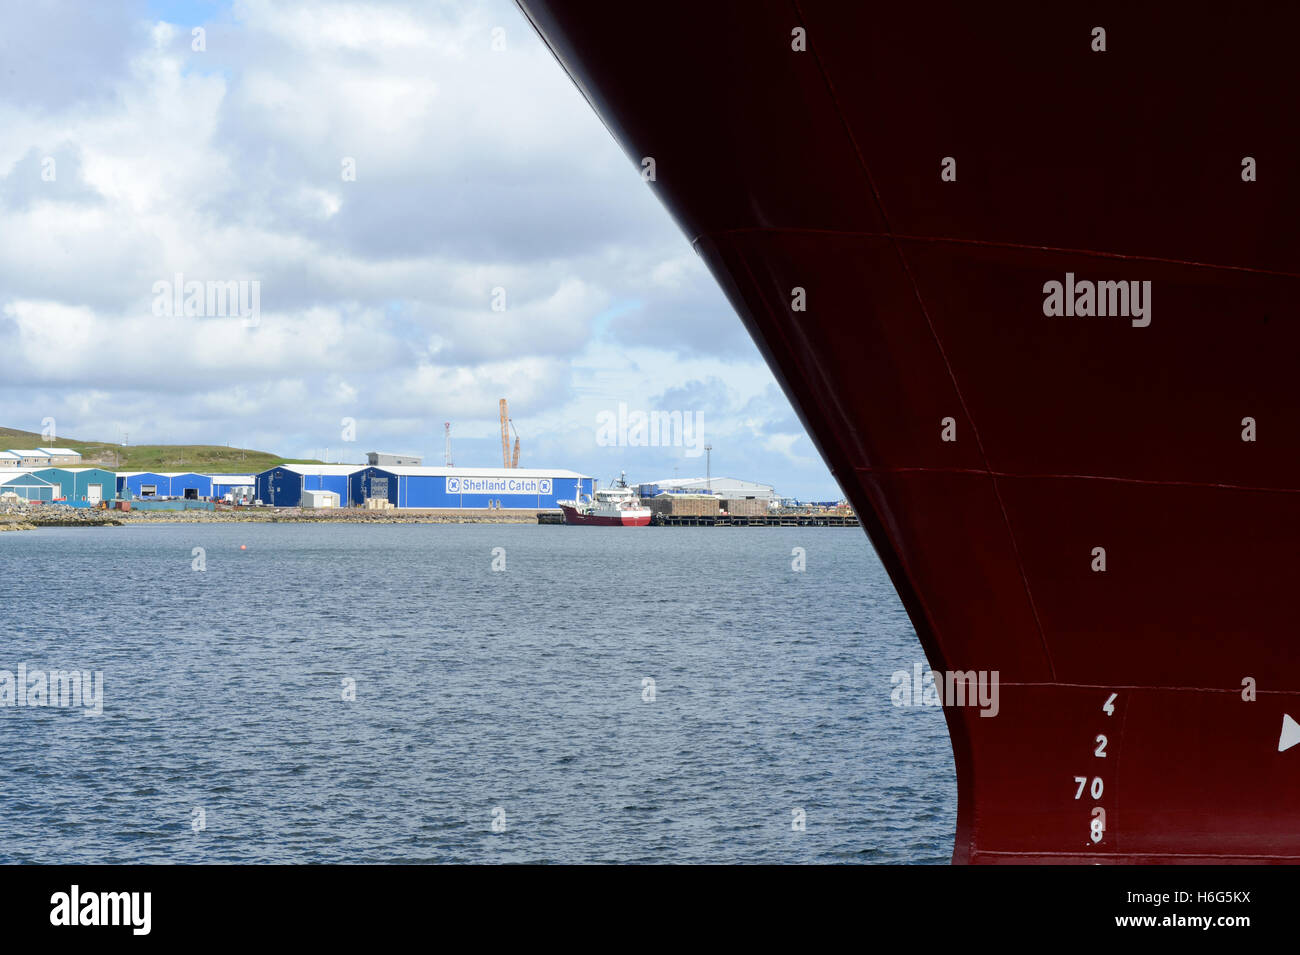 Shetland in Familienbesitz pelagischen Fischerboot, die die Forschung vor im Hafen von Lerwick Shetland-Inseln Anker Stockfoto